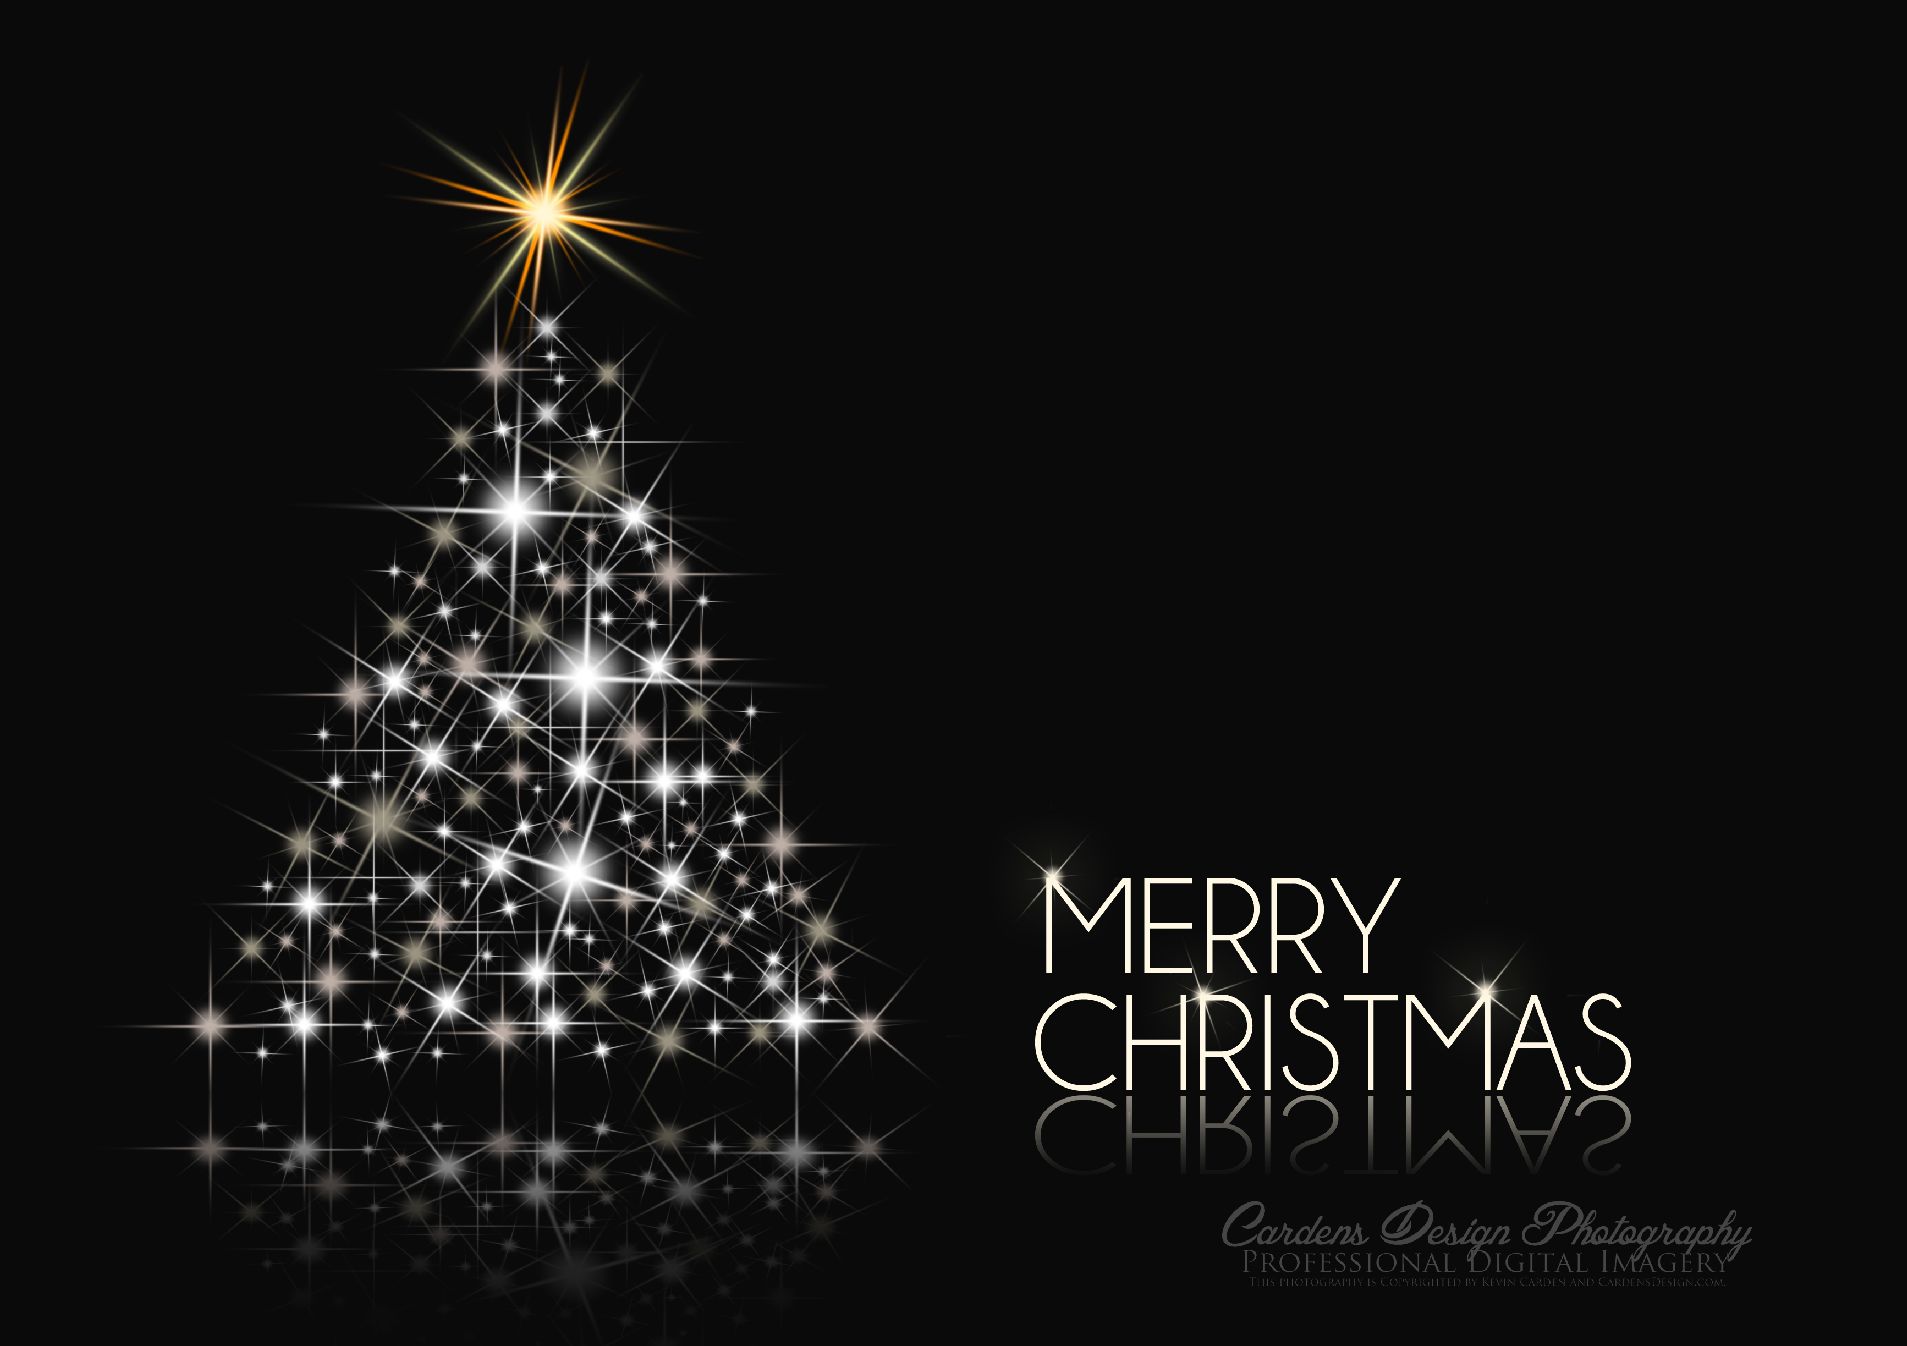 Merry Christmas Black And White Christmas Wallpaper - Black Christmas Wallpaper Hd - HD Wallpaper 